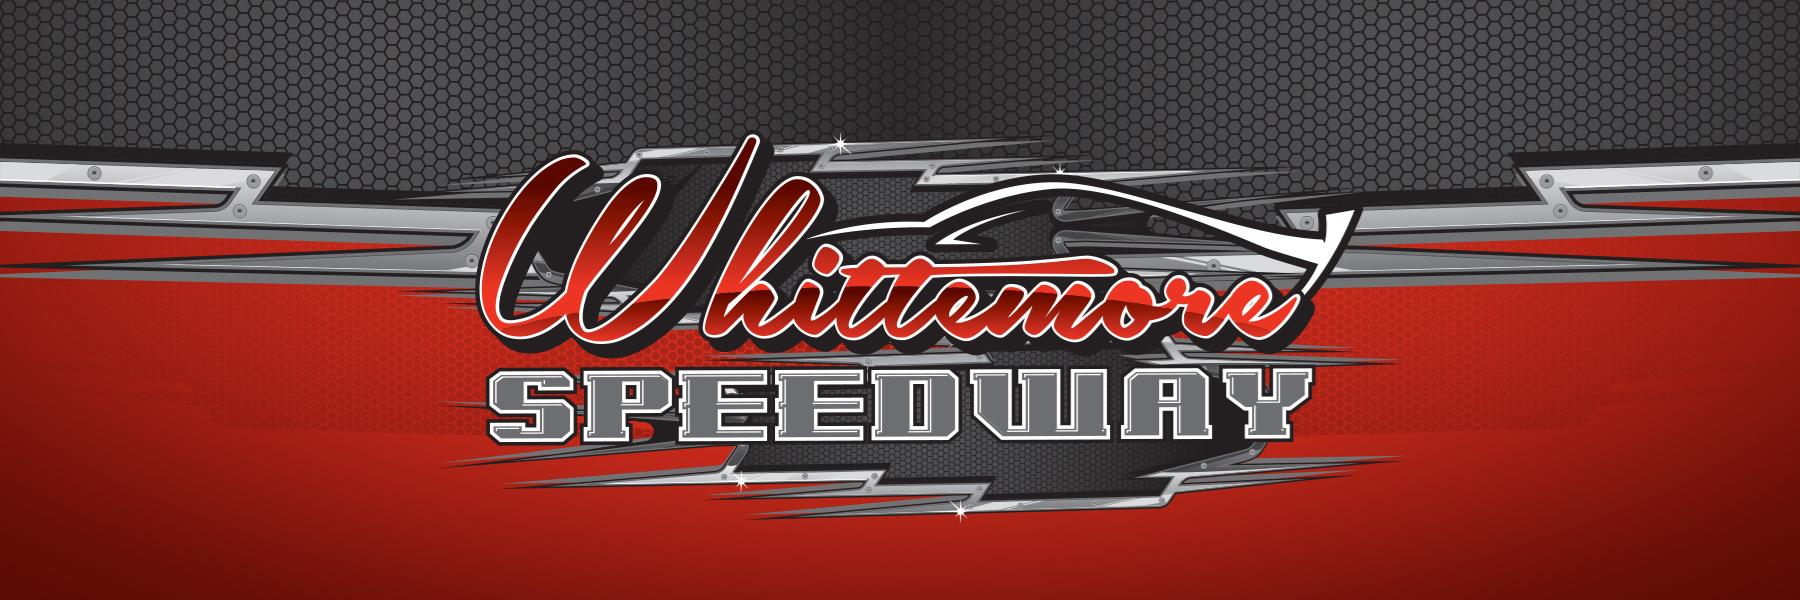 5/29/2021 - Whittemore Speedway